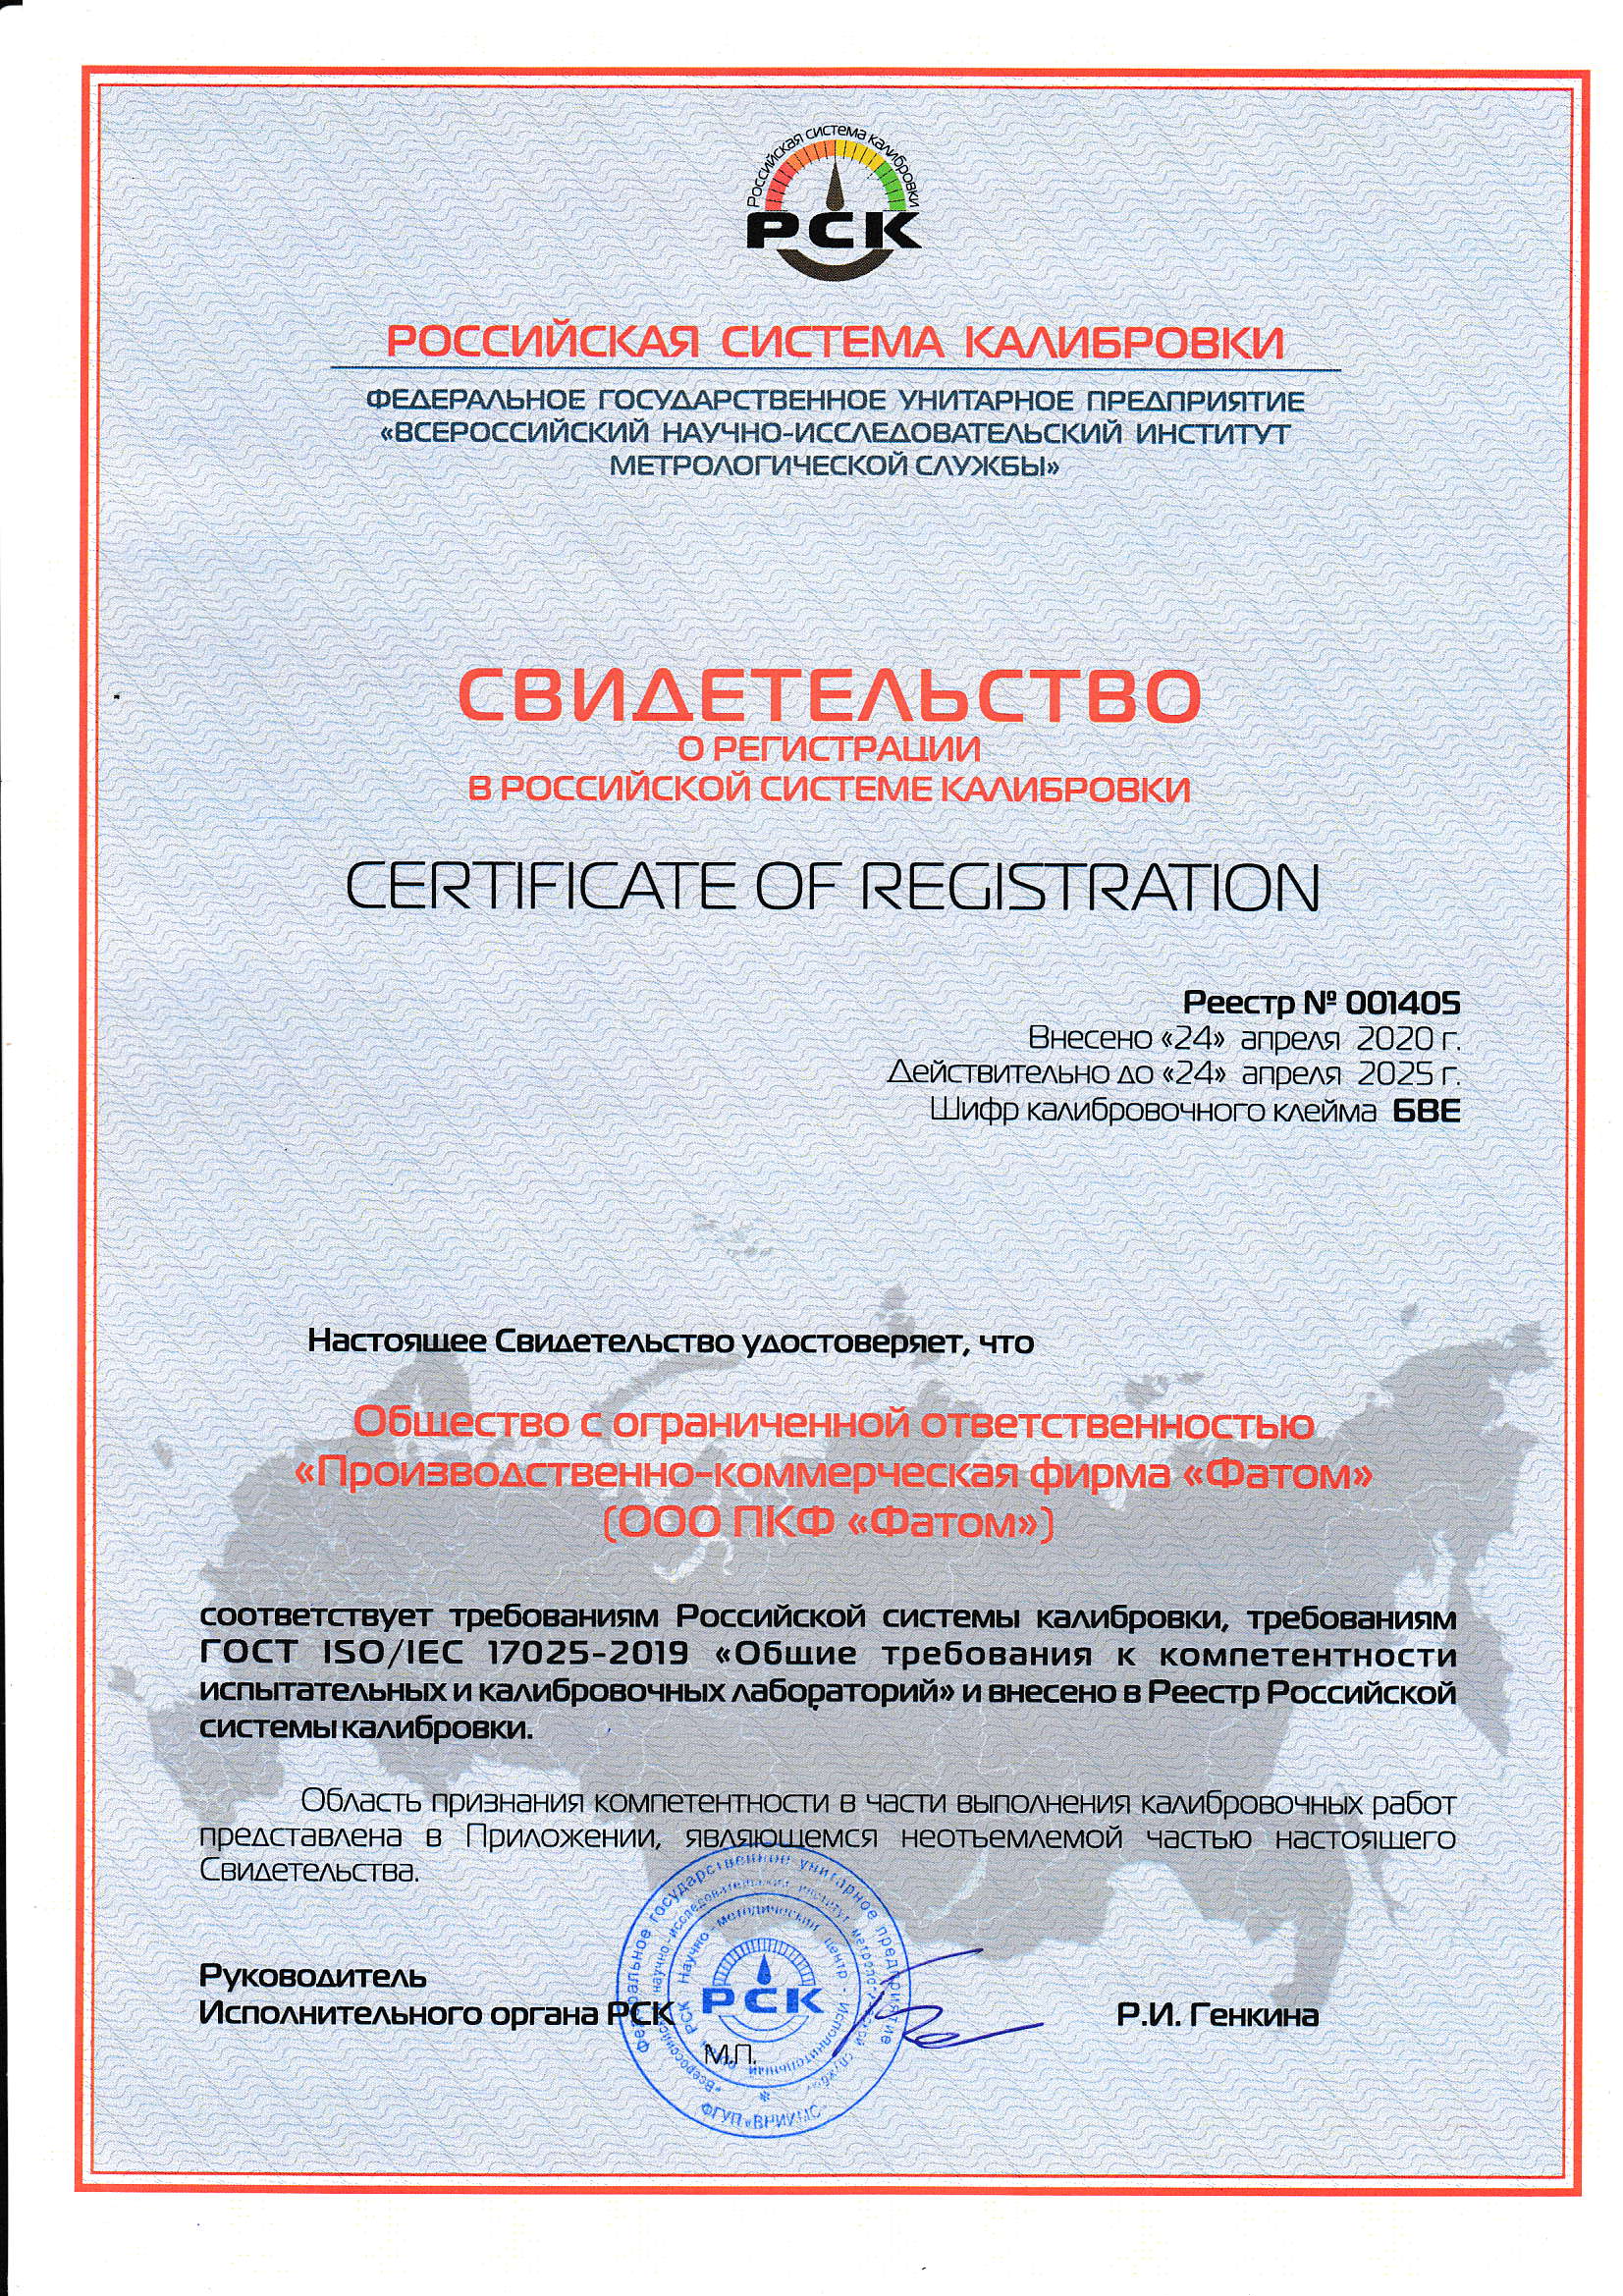 Свидетельство о регистрации в Российской системе калибровки